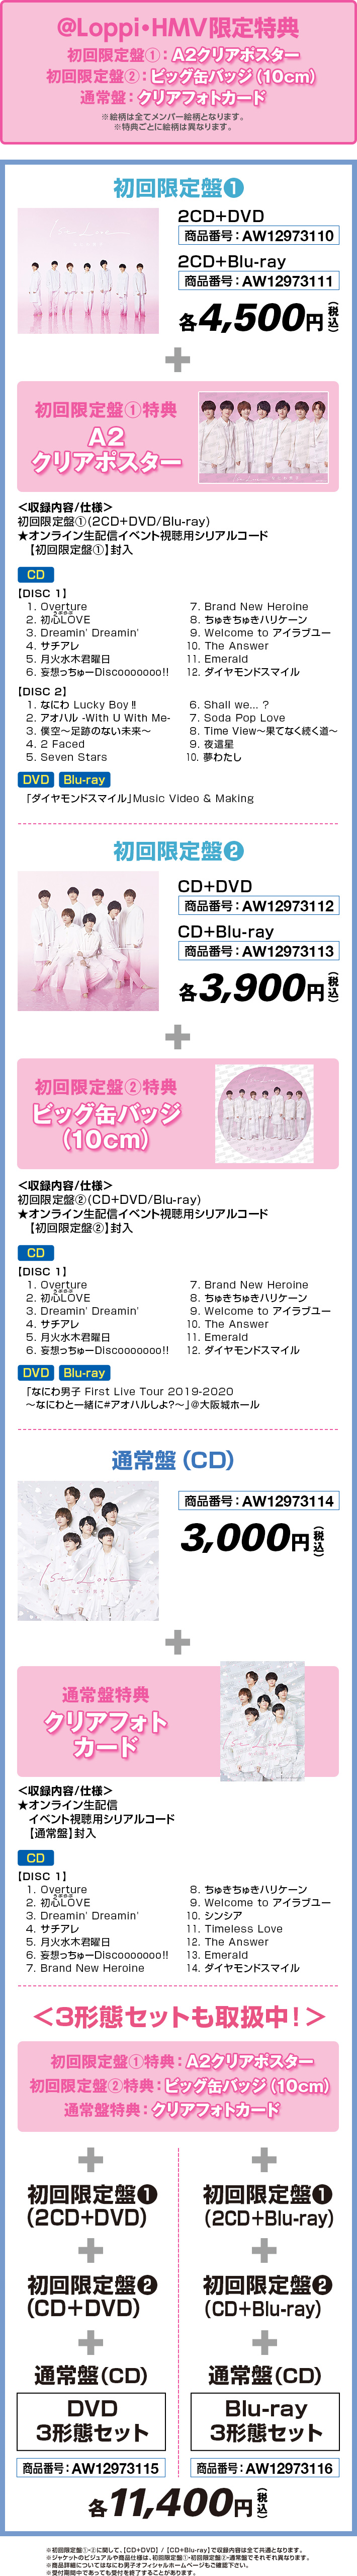 960円 人気TOP 1st Love 初回限定盤2